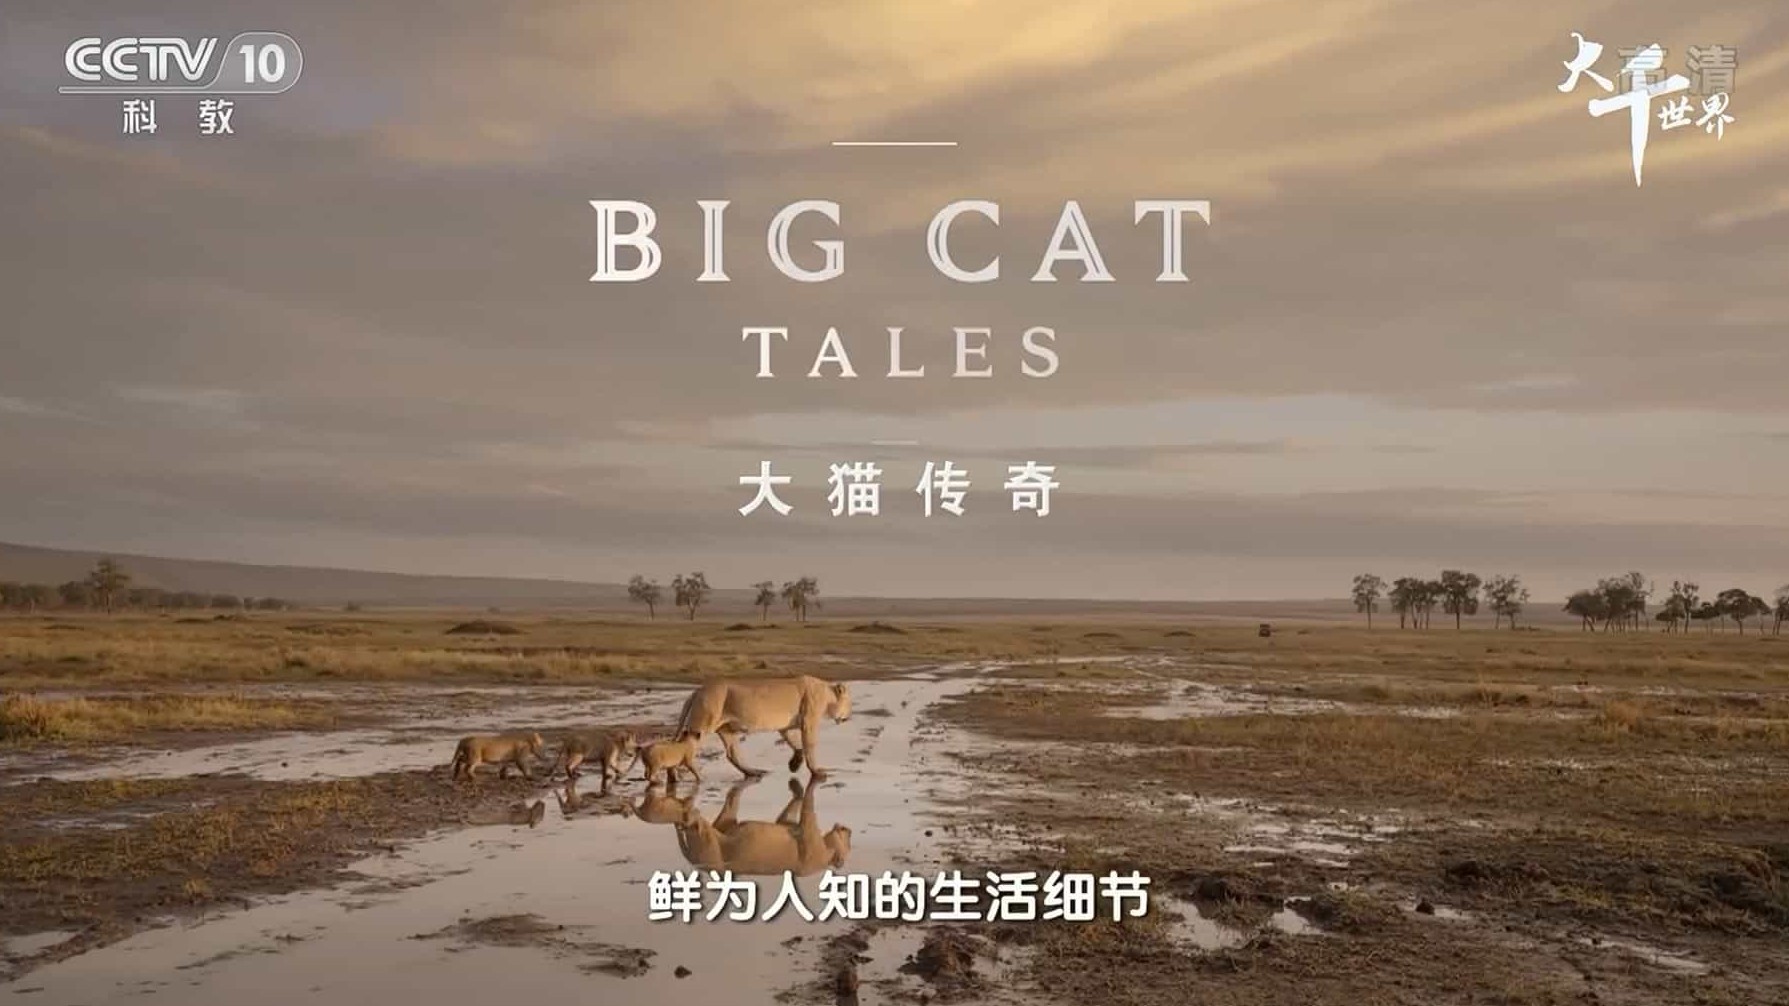 央视纪录片/动物保护《大千世界·大猫传奇 Big Cat Tales 2018》全5集 国语中字 1080i高清纪录片